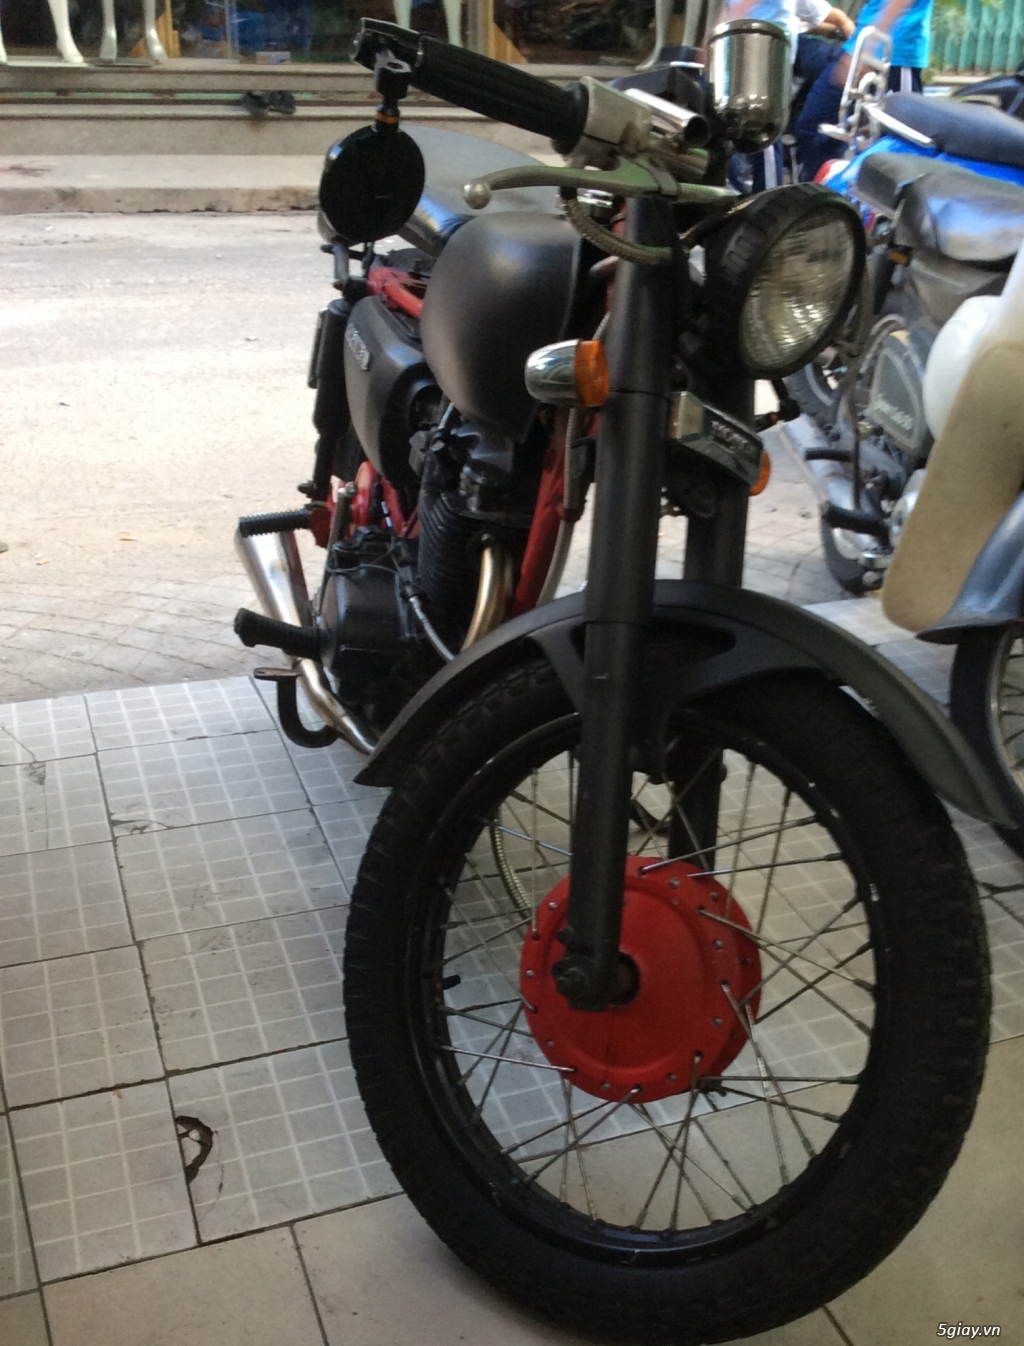 Cần bán motor TMX 155cc cổ, cực hiếm tại Việt Nam! - 2